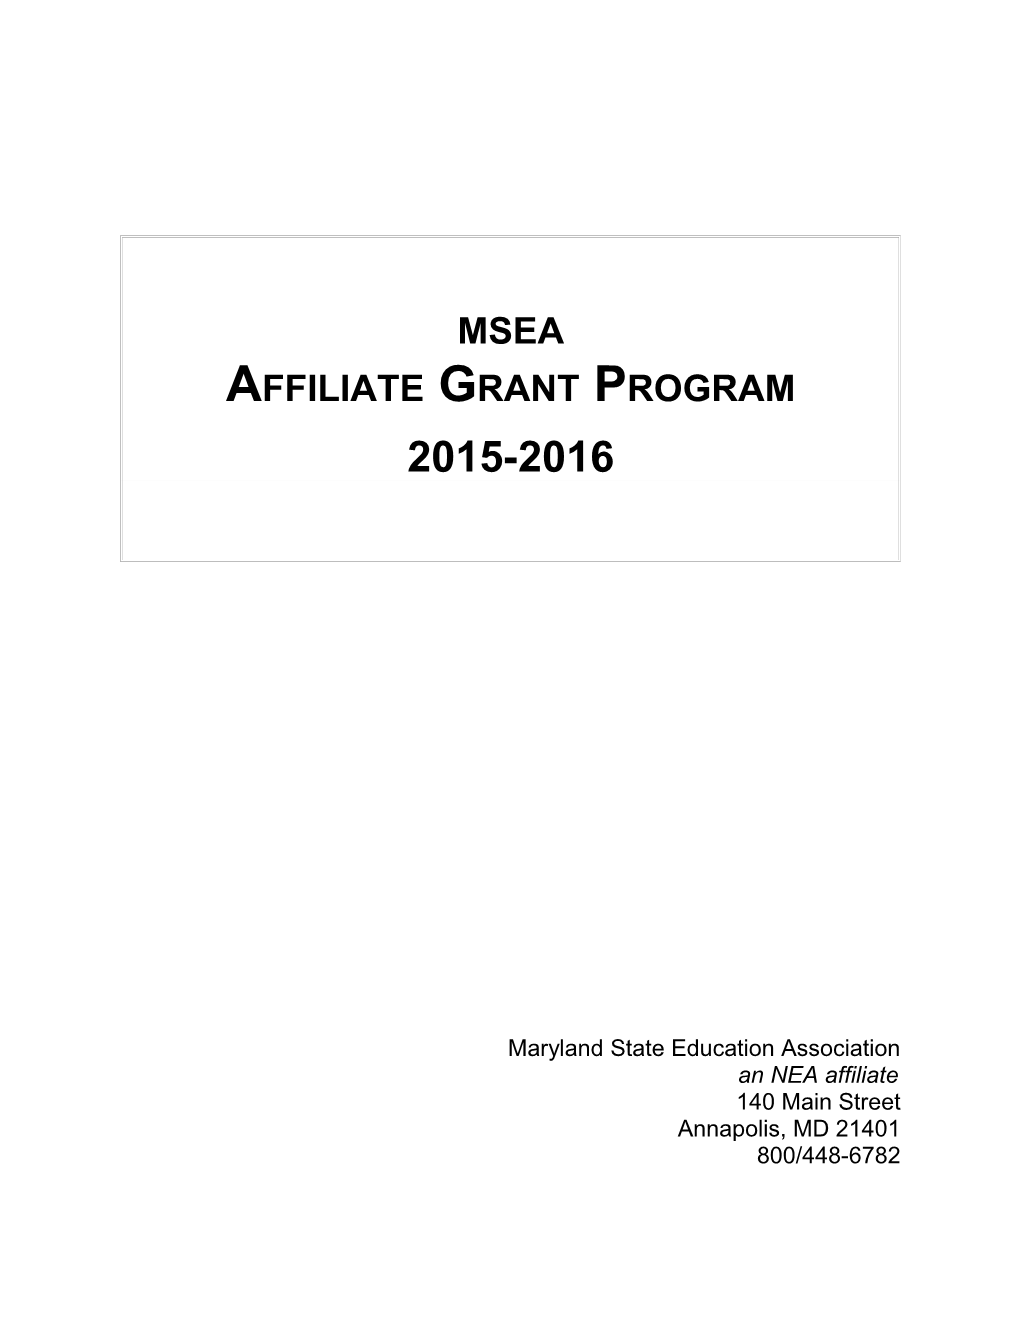 Affiliate Grant Program